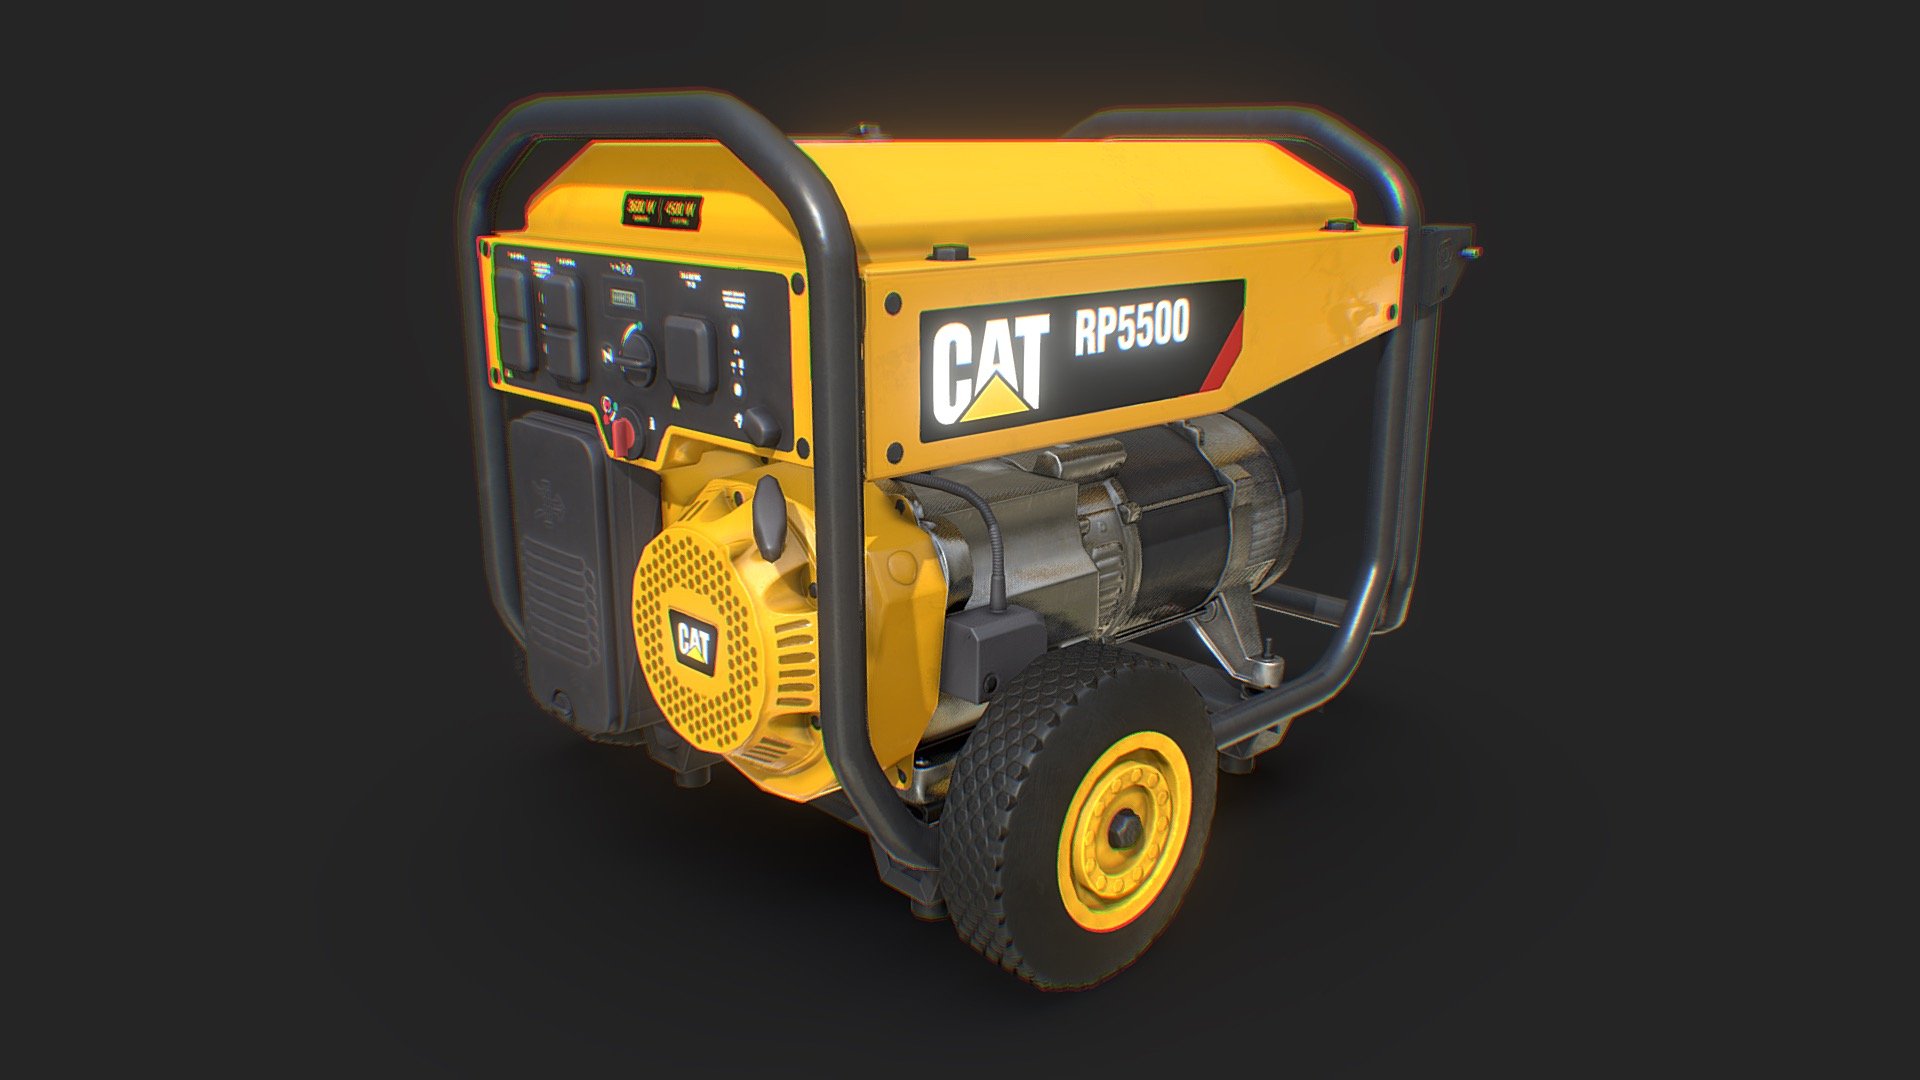 Electric generator - CAT RP 5500 - Electric generator - CAT RP 5500 - 3D model by David Young (@David_Young) 3d model